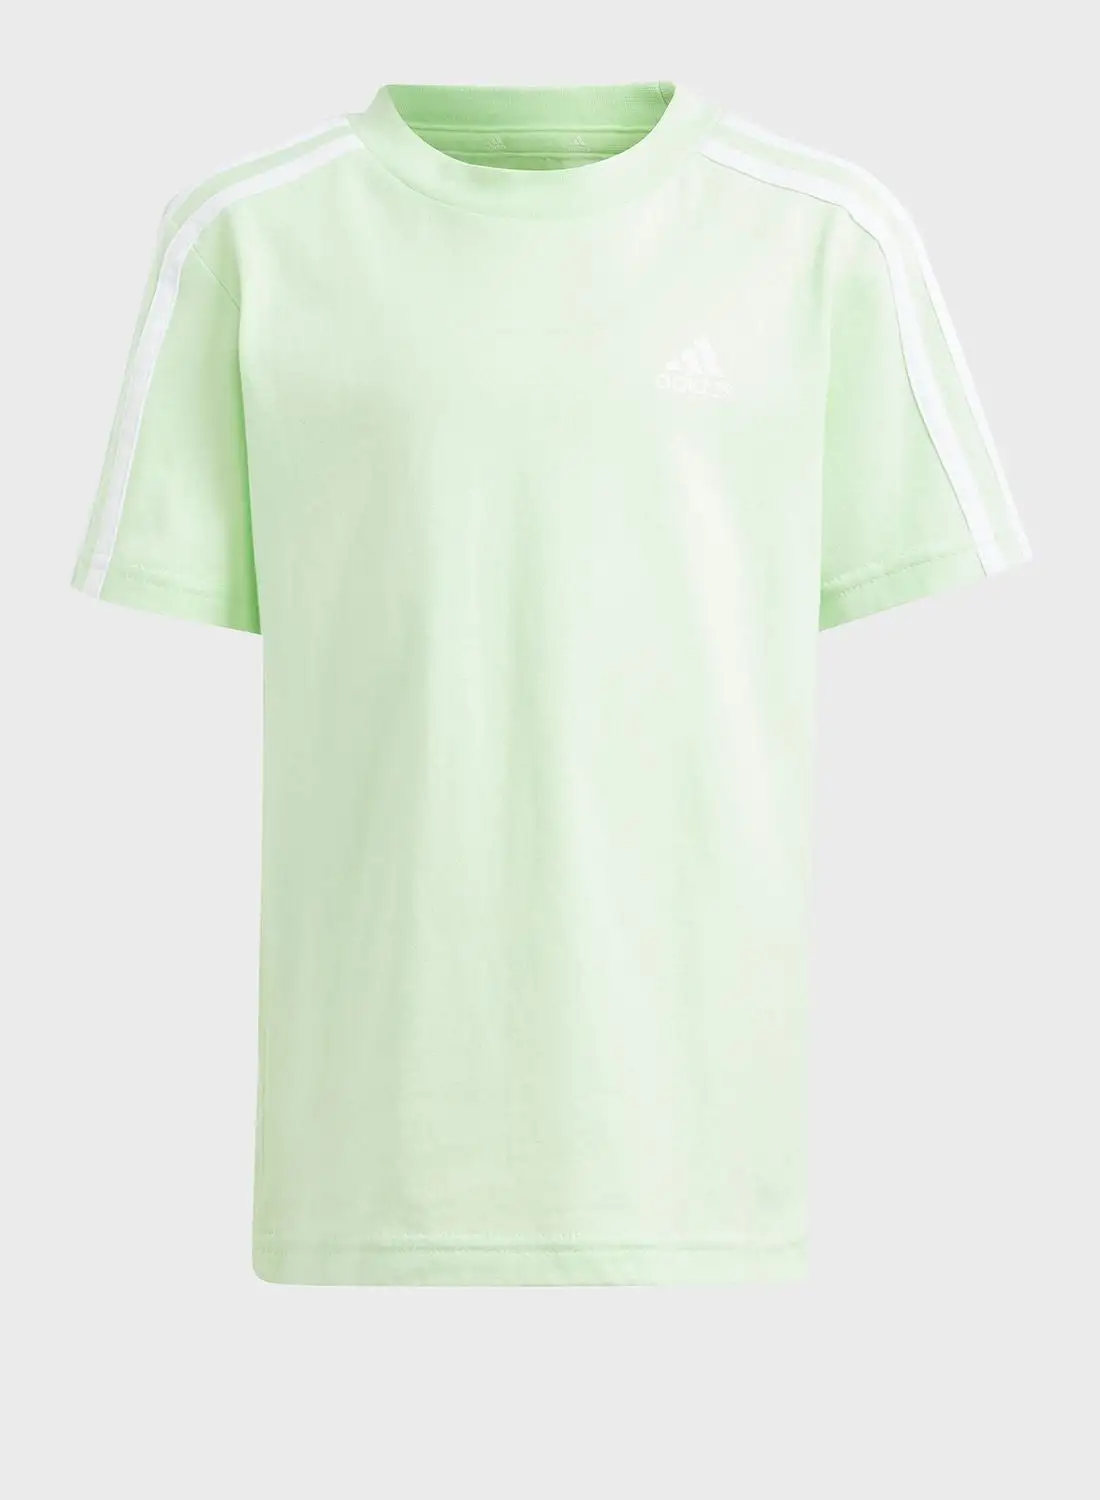 Adidas Little Kids 3 Stripes T-Shirt